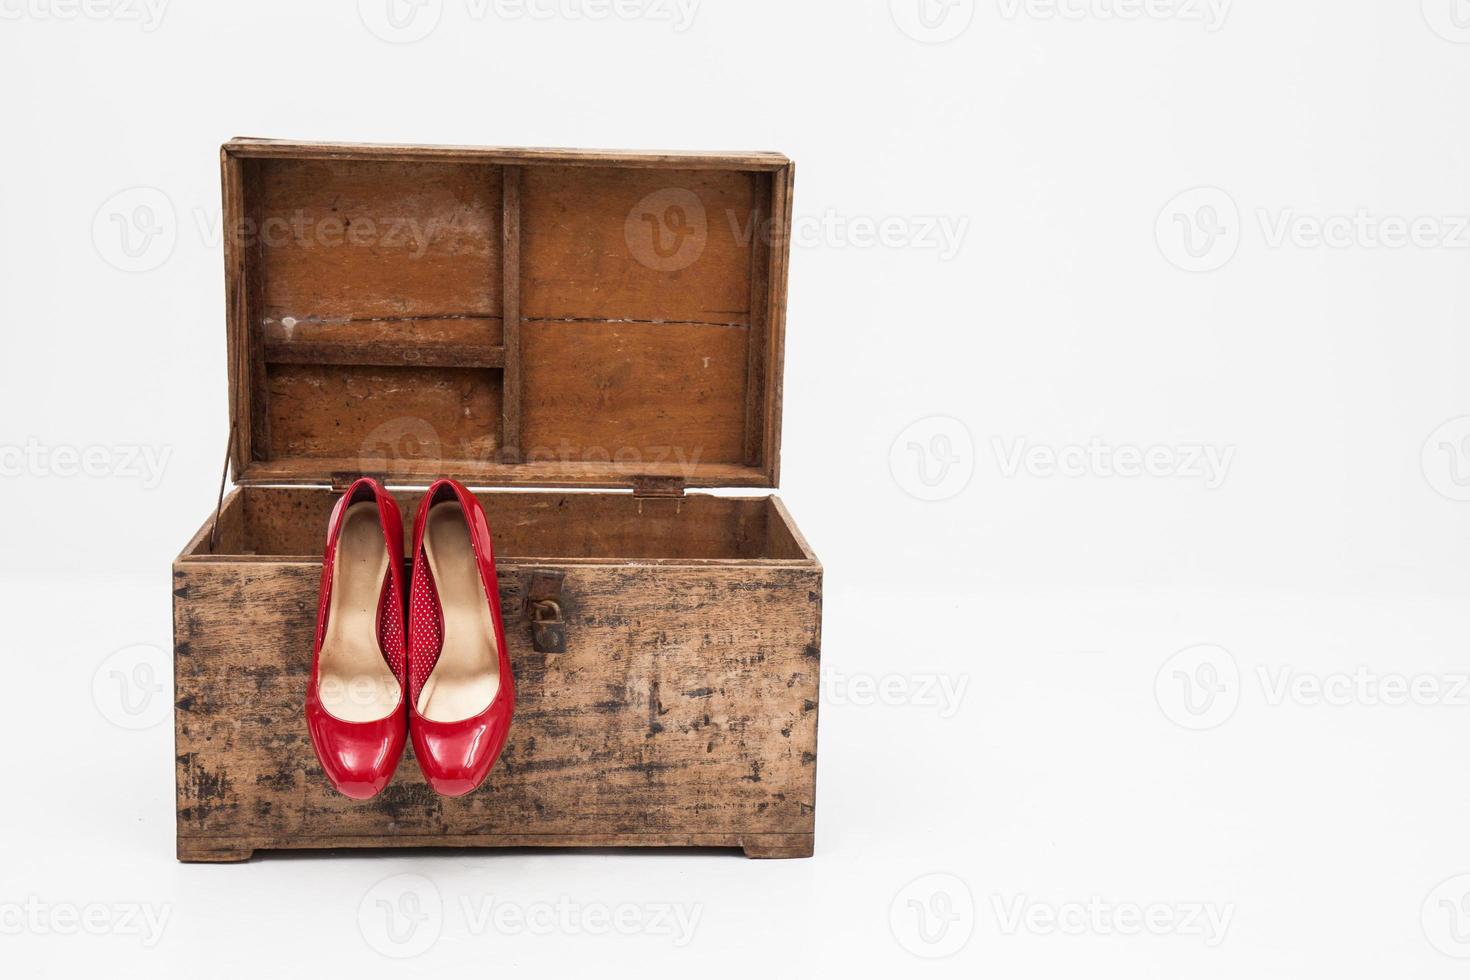 rote Schuhe mit Box auf weißem Hintergrund foto